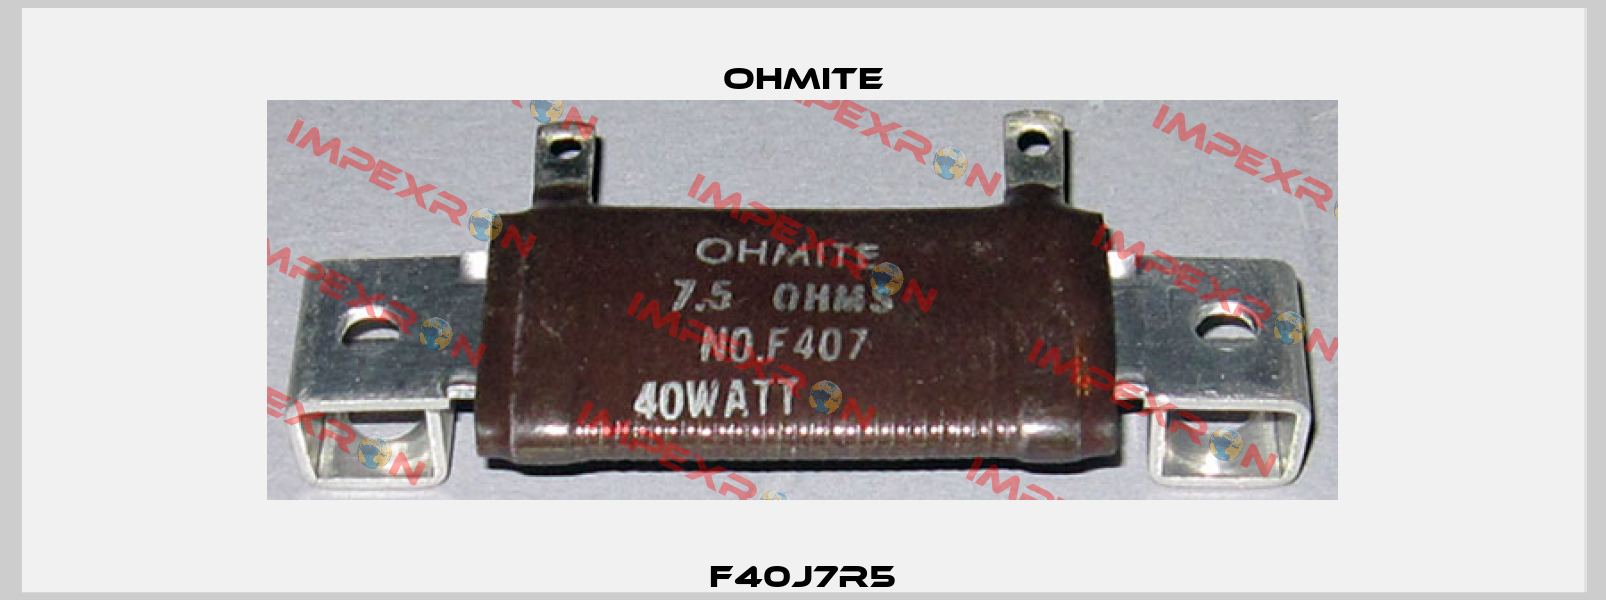 F40J7R5 Ohmite